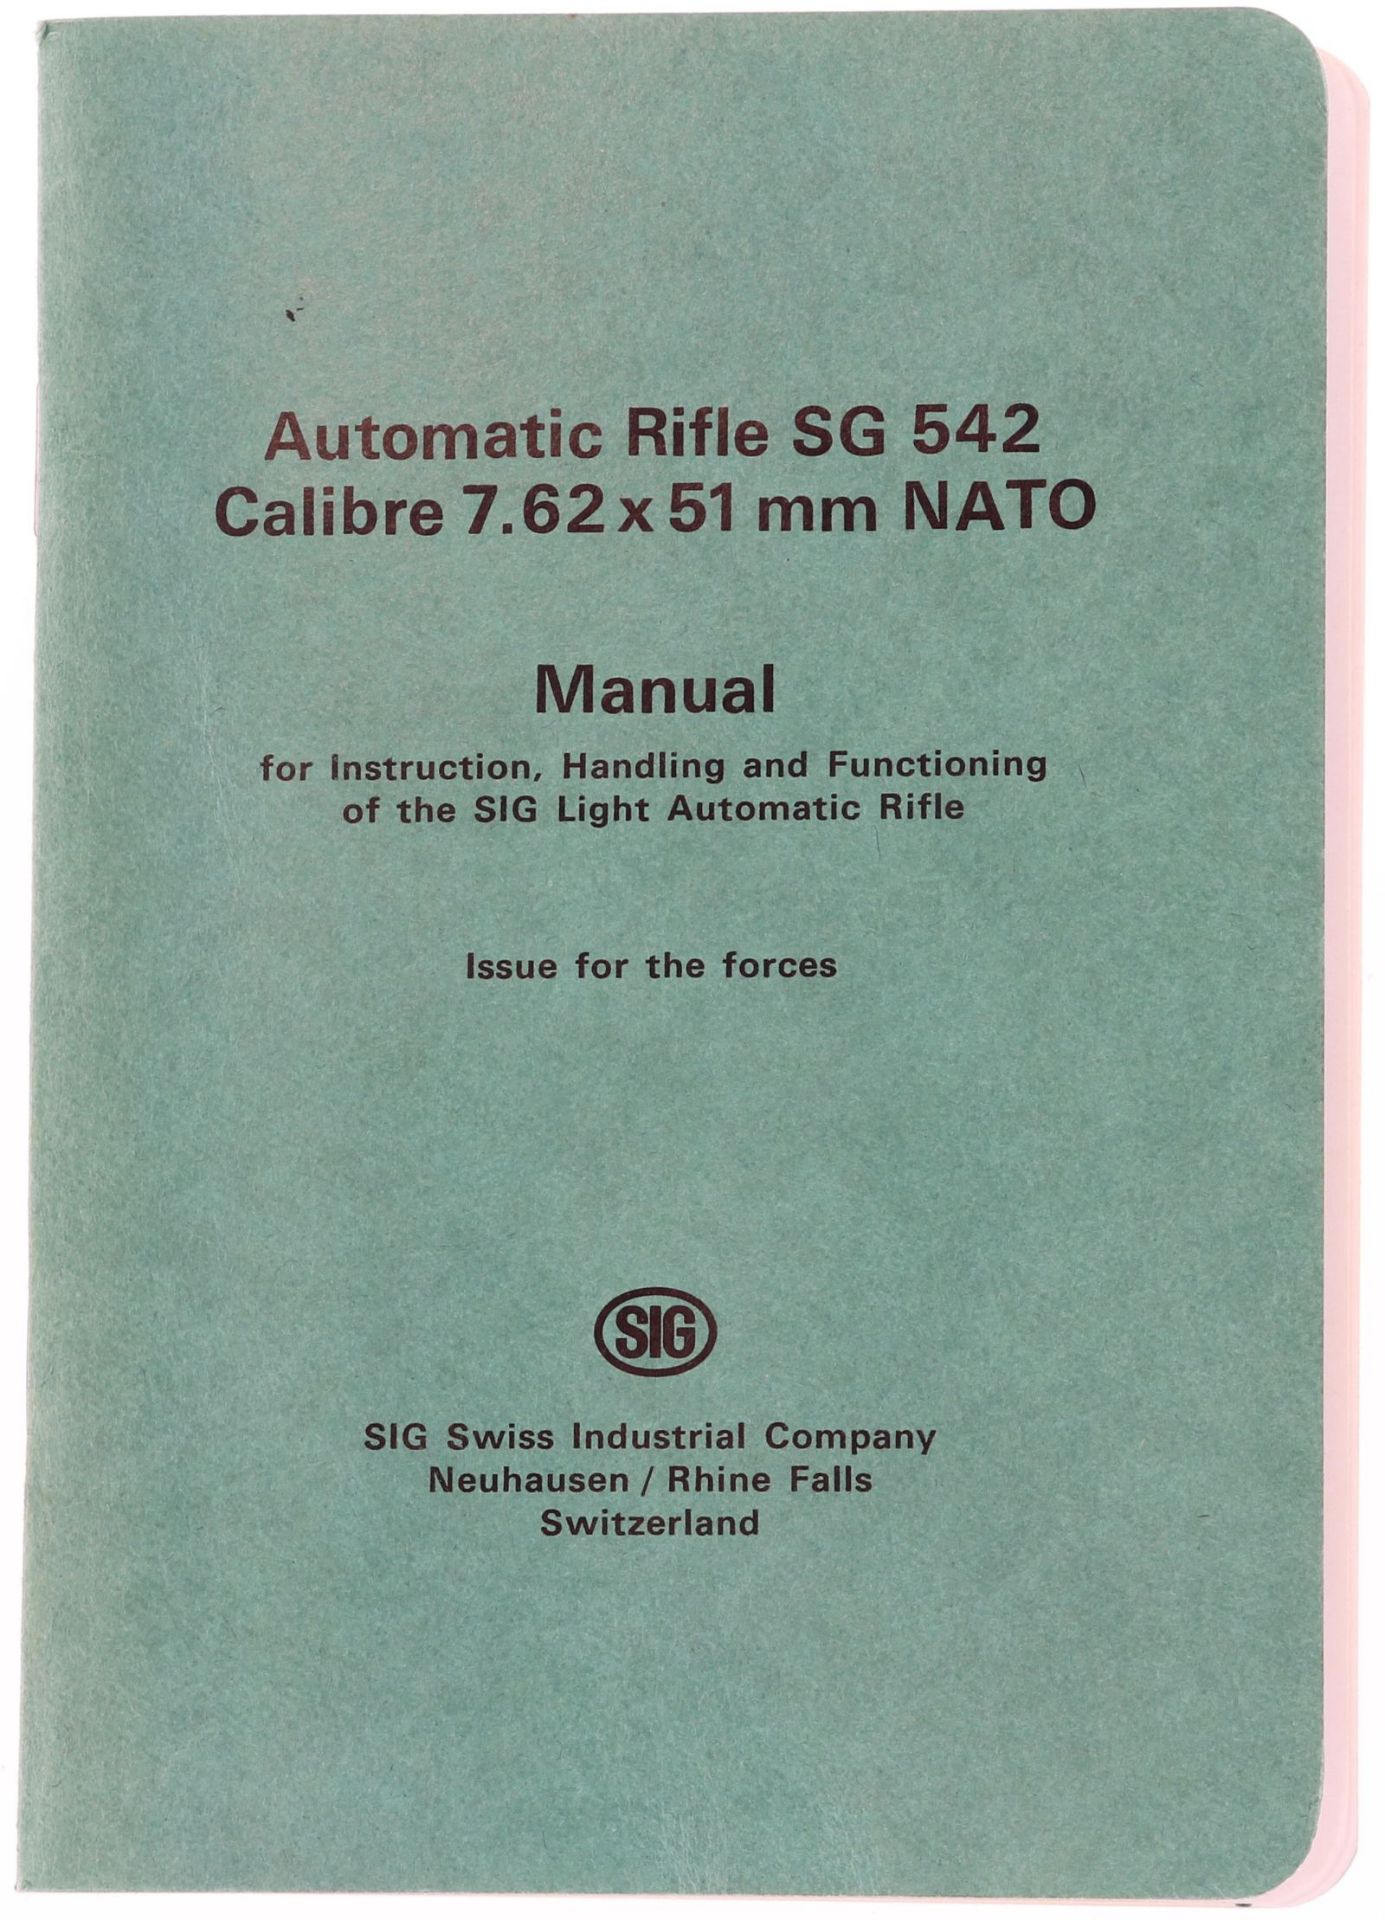 Manual für SIG Automatic Rifle SG 542. Bedienungs- und wartungsanleitung in englischer Sprache zum